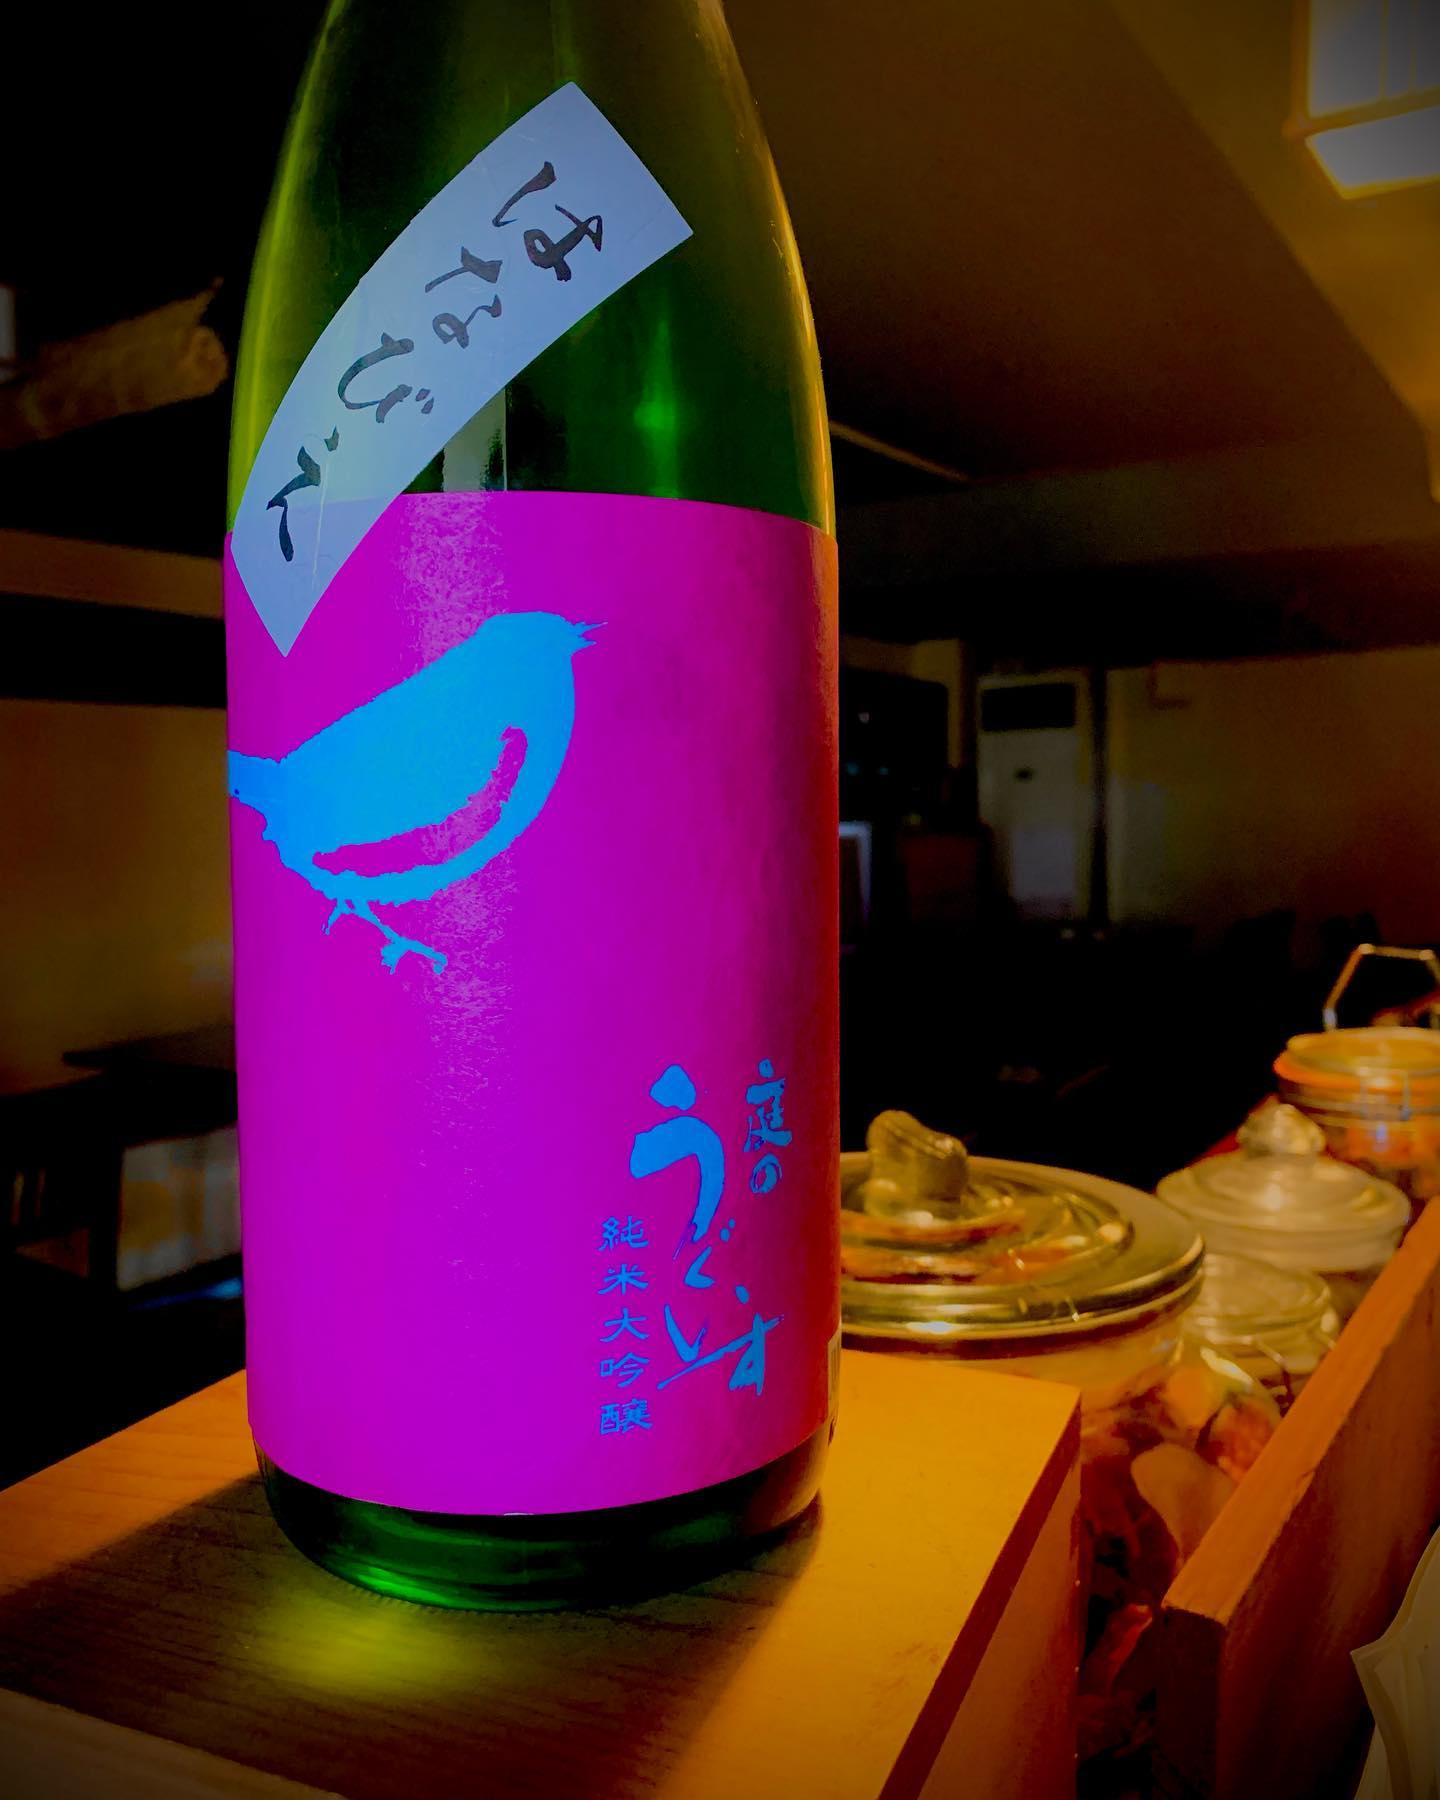 本日の日本酒紹介です。
「庭のうぐいす」
この日本酒はキリッとしたフルーティーな香味と山田錦の旨味広がる、スッキリな後味の日本酒です。是非最初の1杯目にいかがでしょうか？
  #